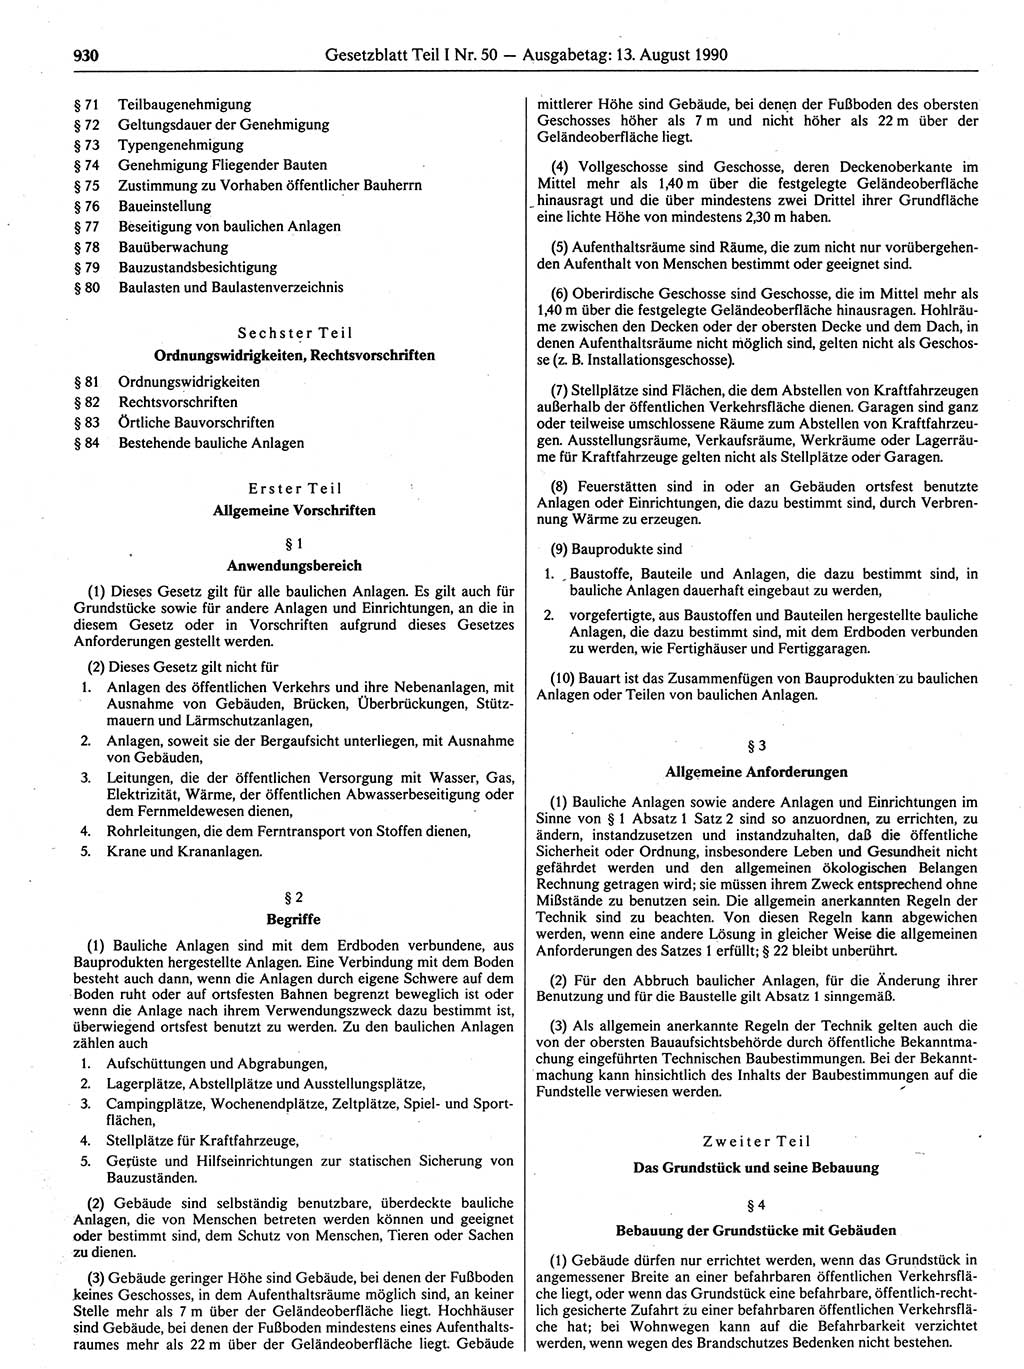 Gesetzblatt (GBl.) der Deutschen Demokratischen Republik (DDR) Teil Ⅰ 1990, Seite 930 (GBl. DDR Ⅰ 1990, S. 930)